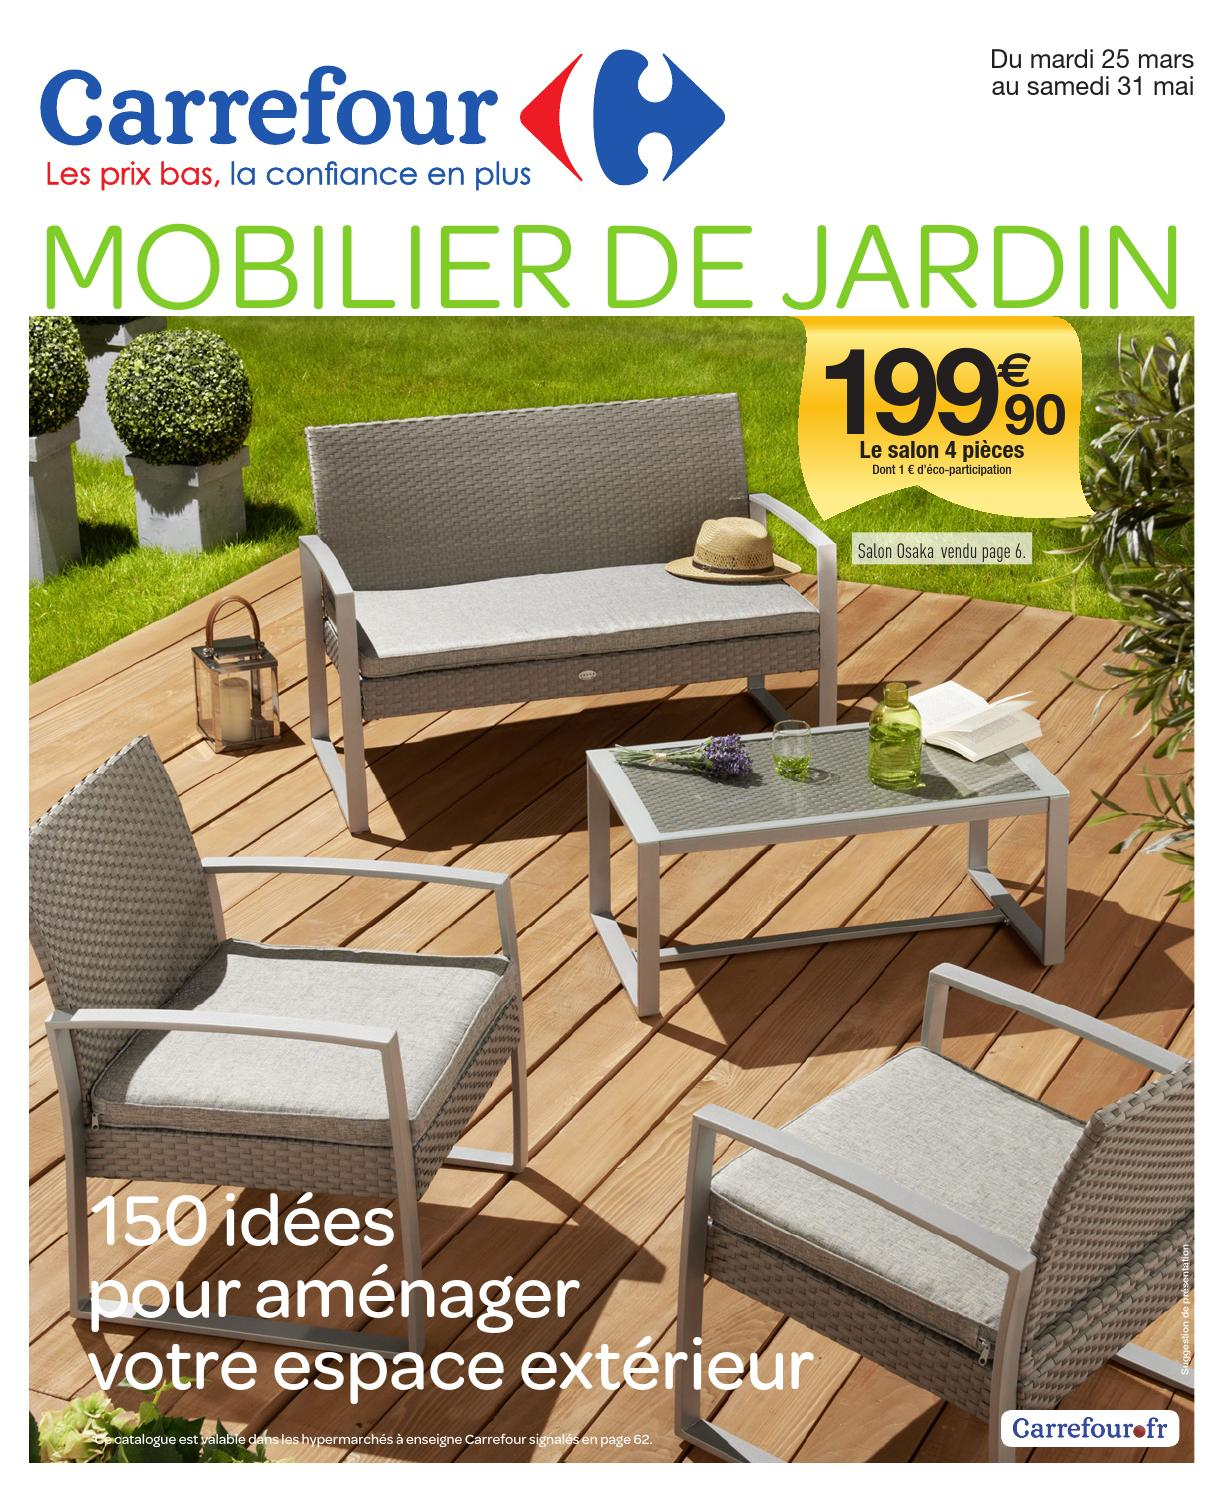 Catalogue Carrefour - 25.03-31.05.2014 By Joe Monroe - Issuu destiné Balancelle De Jardin Carrefour